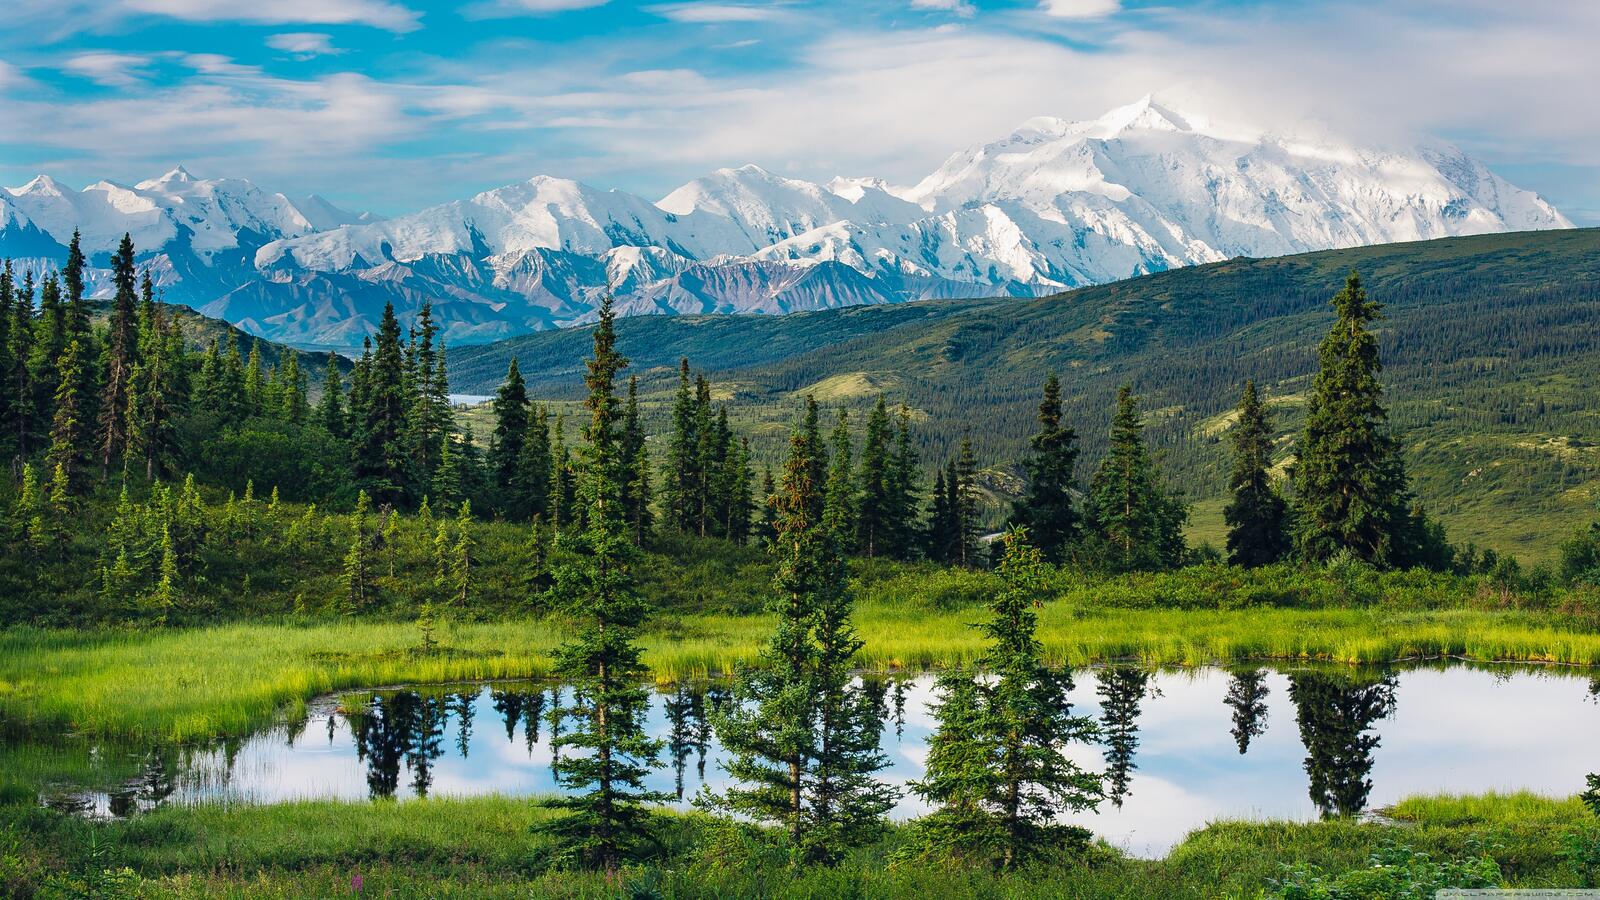 Обои Аляска природа пейзаж на рабочий стол